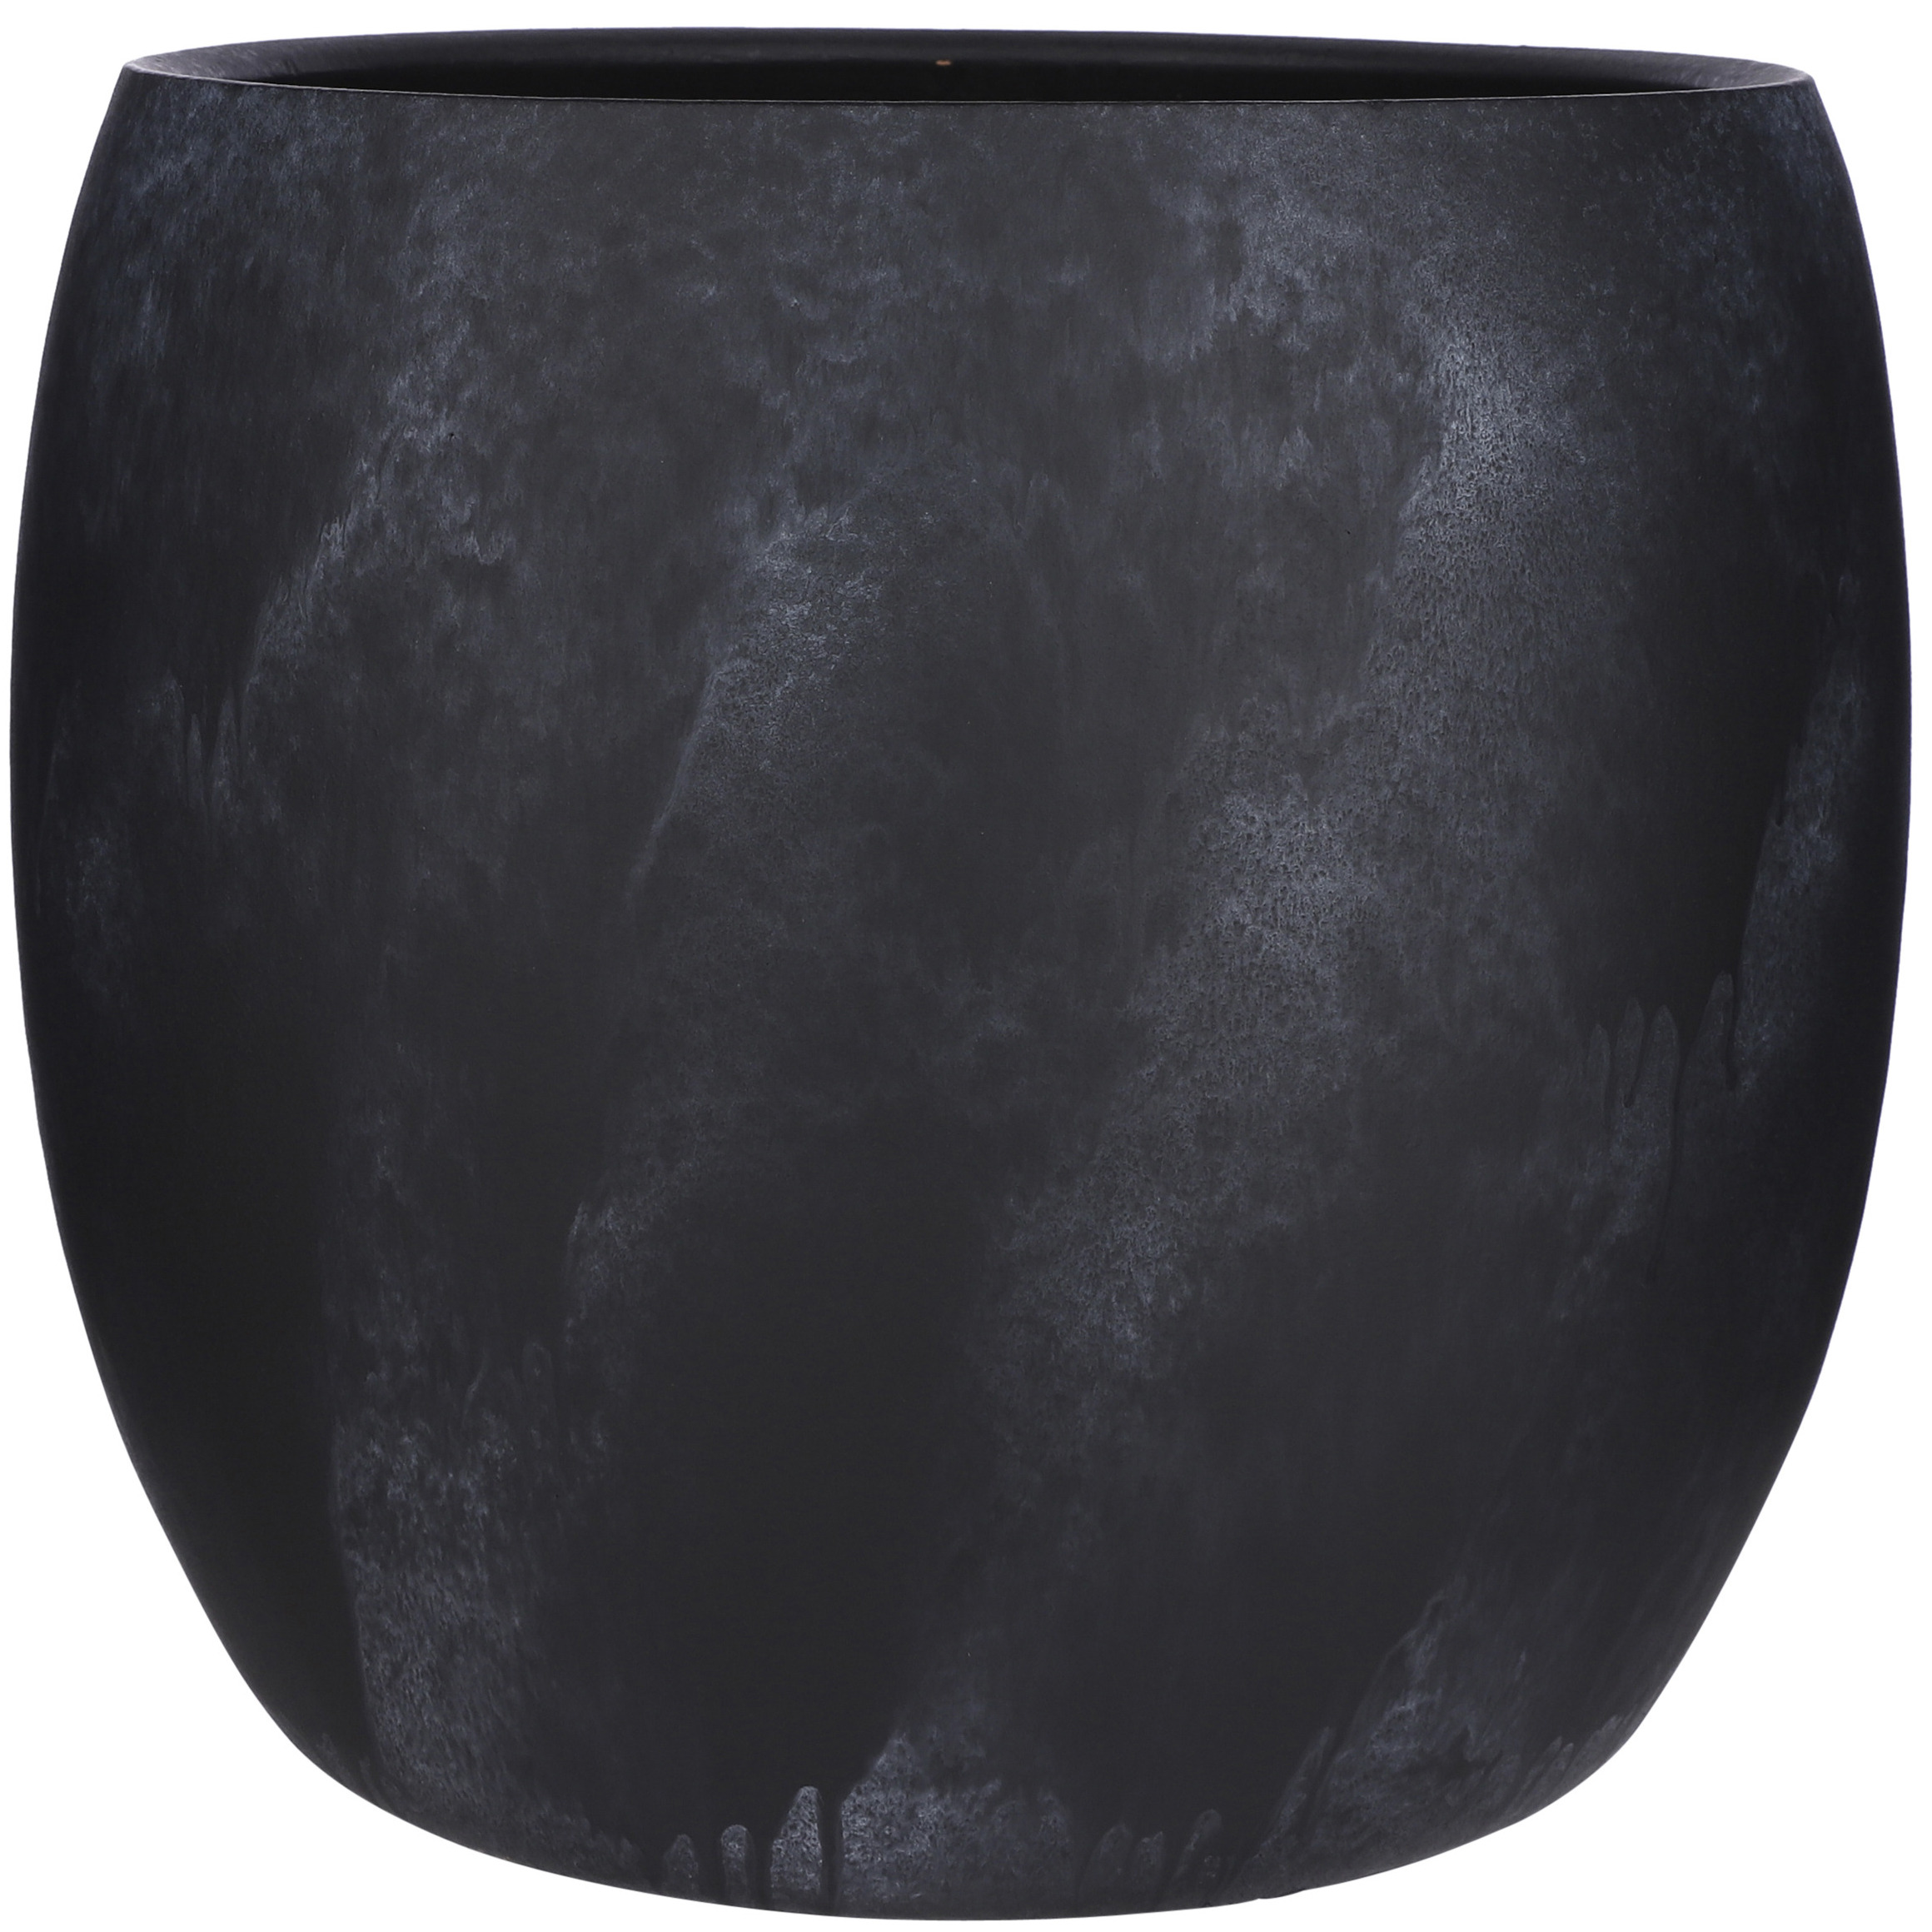 Bloempot in het mat zwart keramiek voor kamerplant H35 x D32 cm